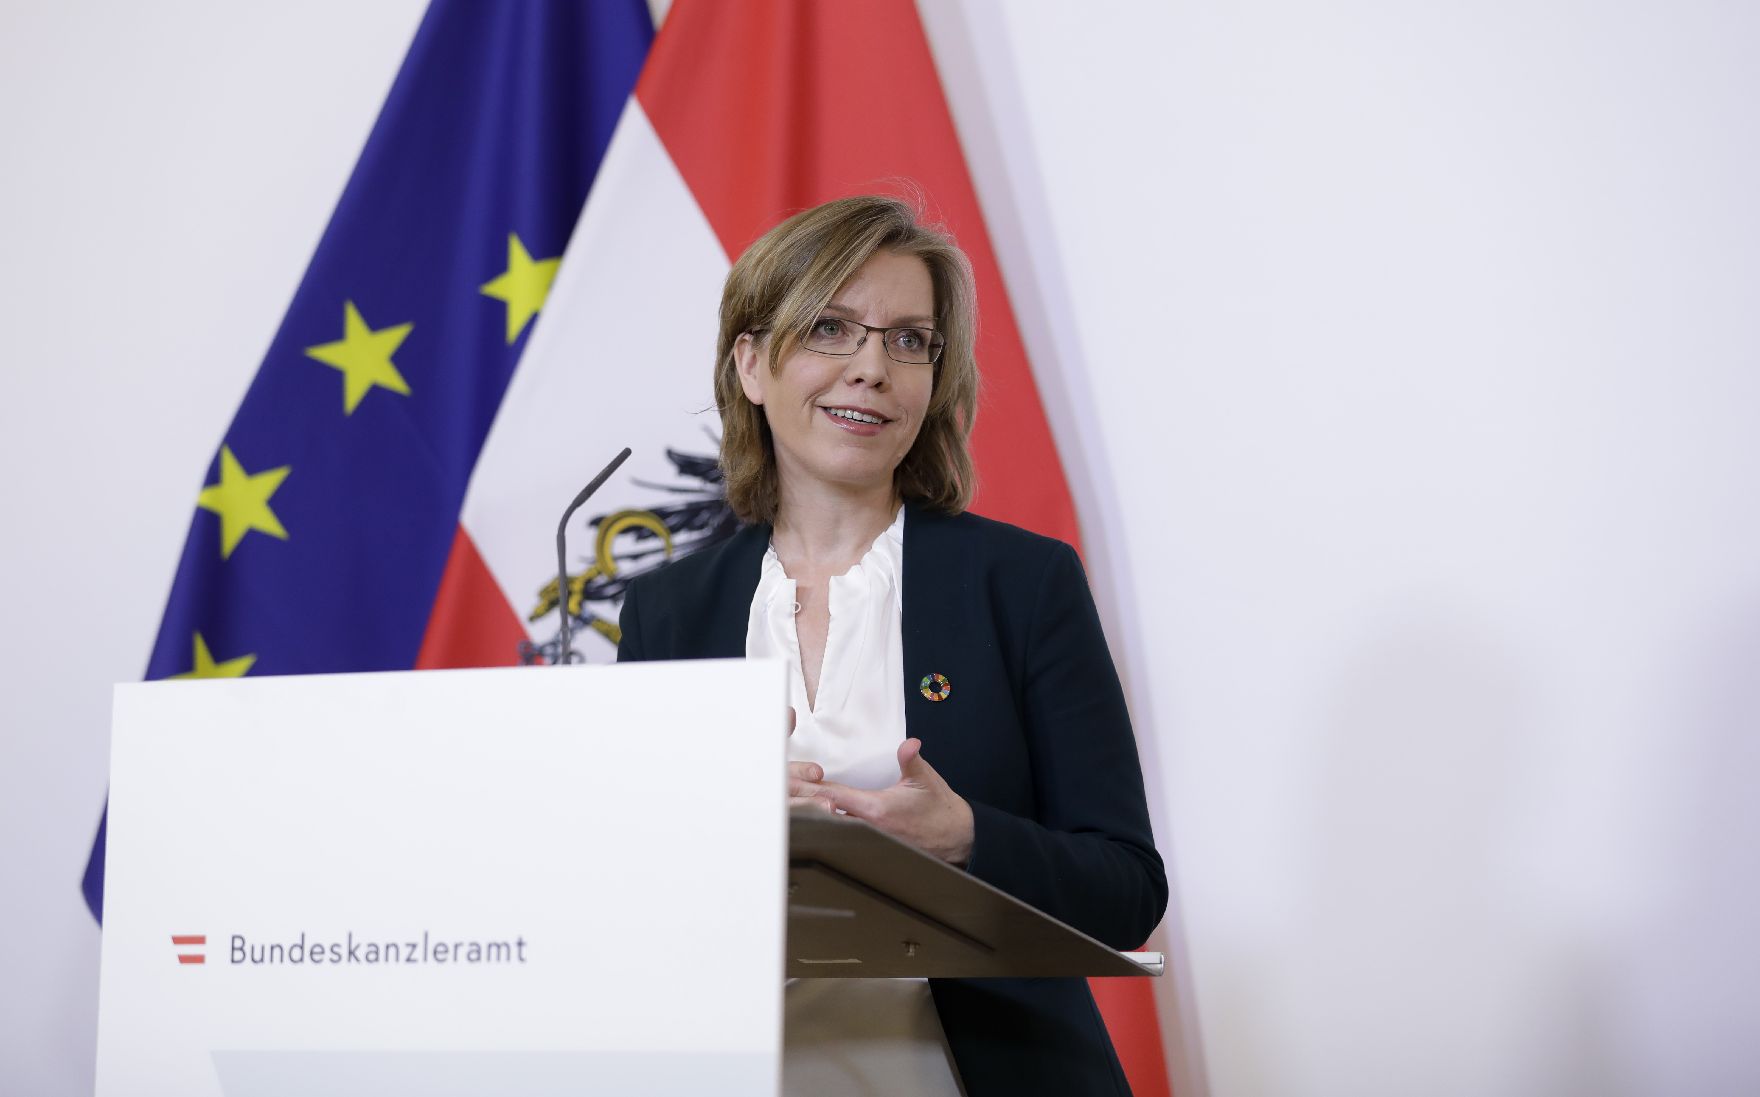 Am 26. März 2020 fand ein Pressestatement zu den Maßnahmen gegen die Krise im Bundeskanzleramt statt. Im Bild Klimaschutz- und Energieministerin Leonore Gewessler.